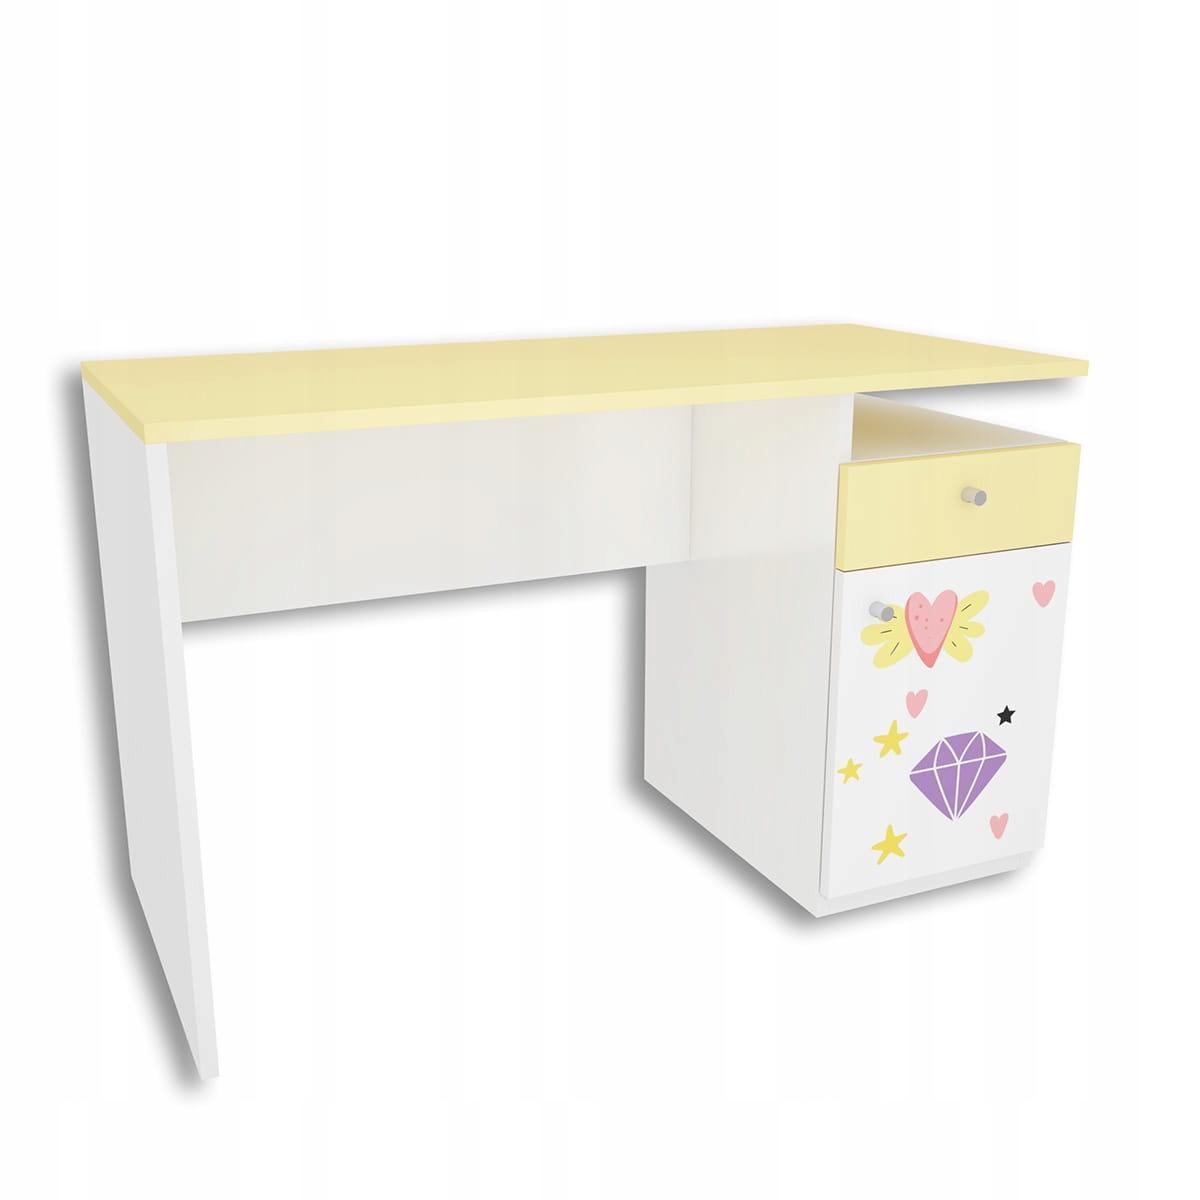 Zestaw 4 szt mebli DIAMOND biało żółtych szafa, biurko, 2 szafki wiszące z jednorożcem dla dziecka 2 Full Screen